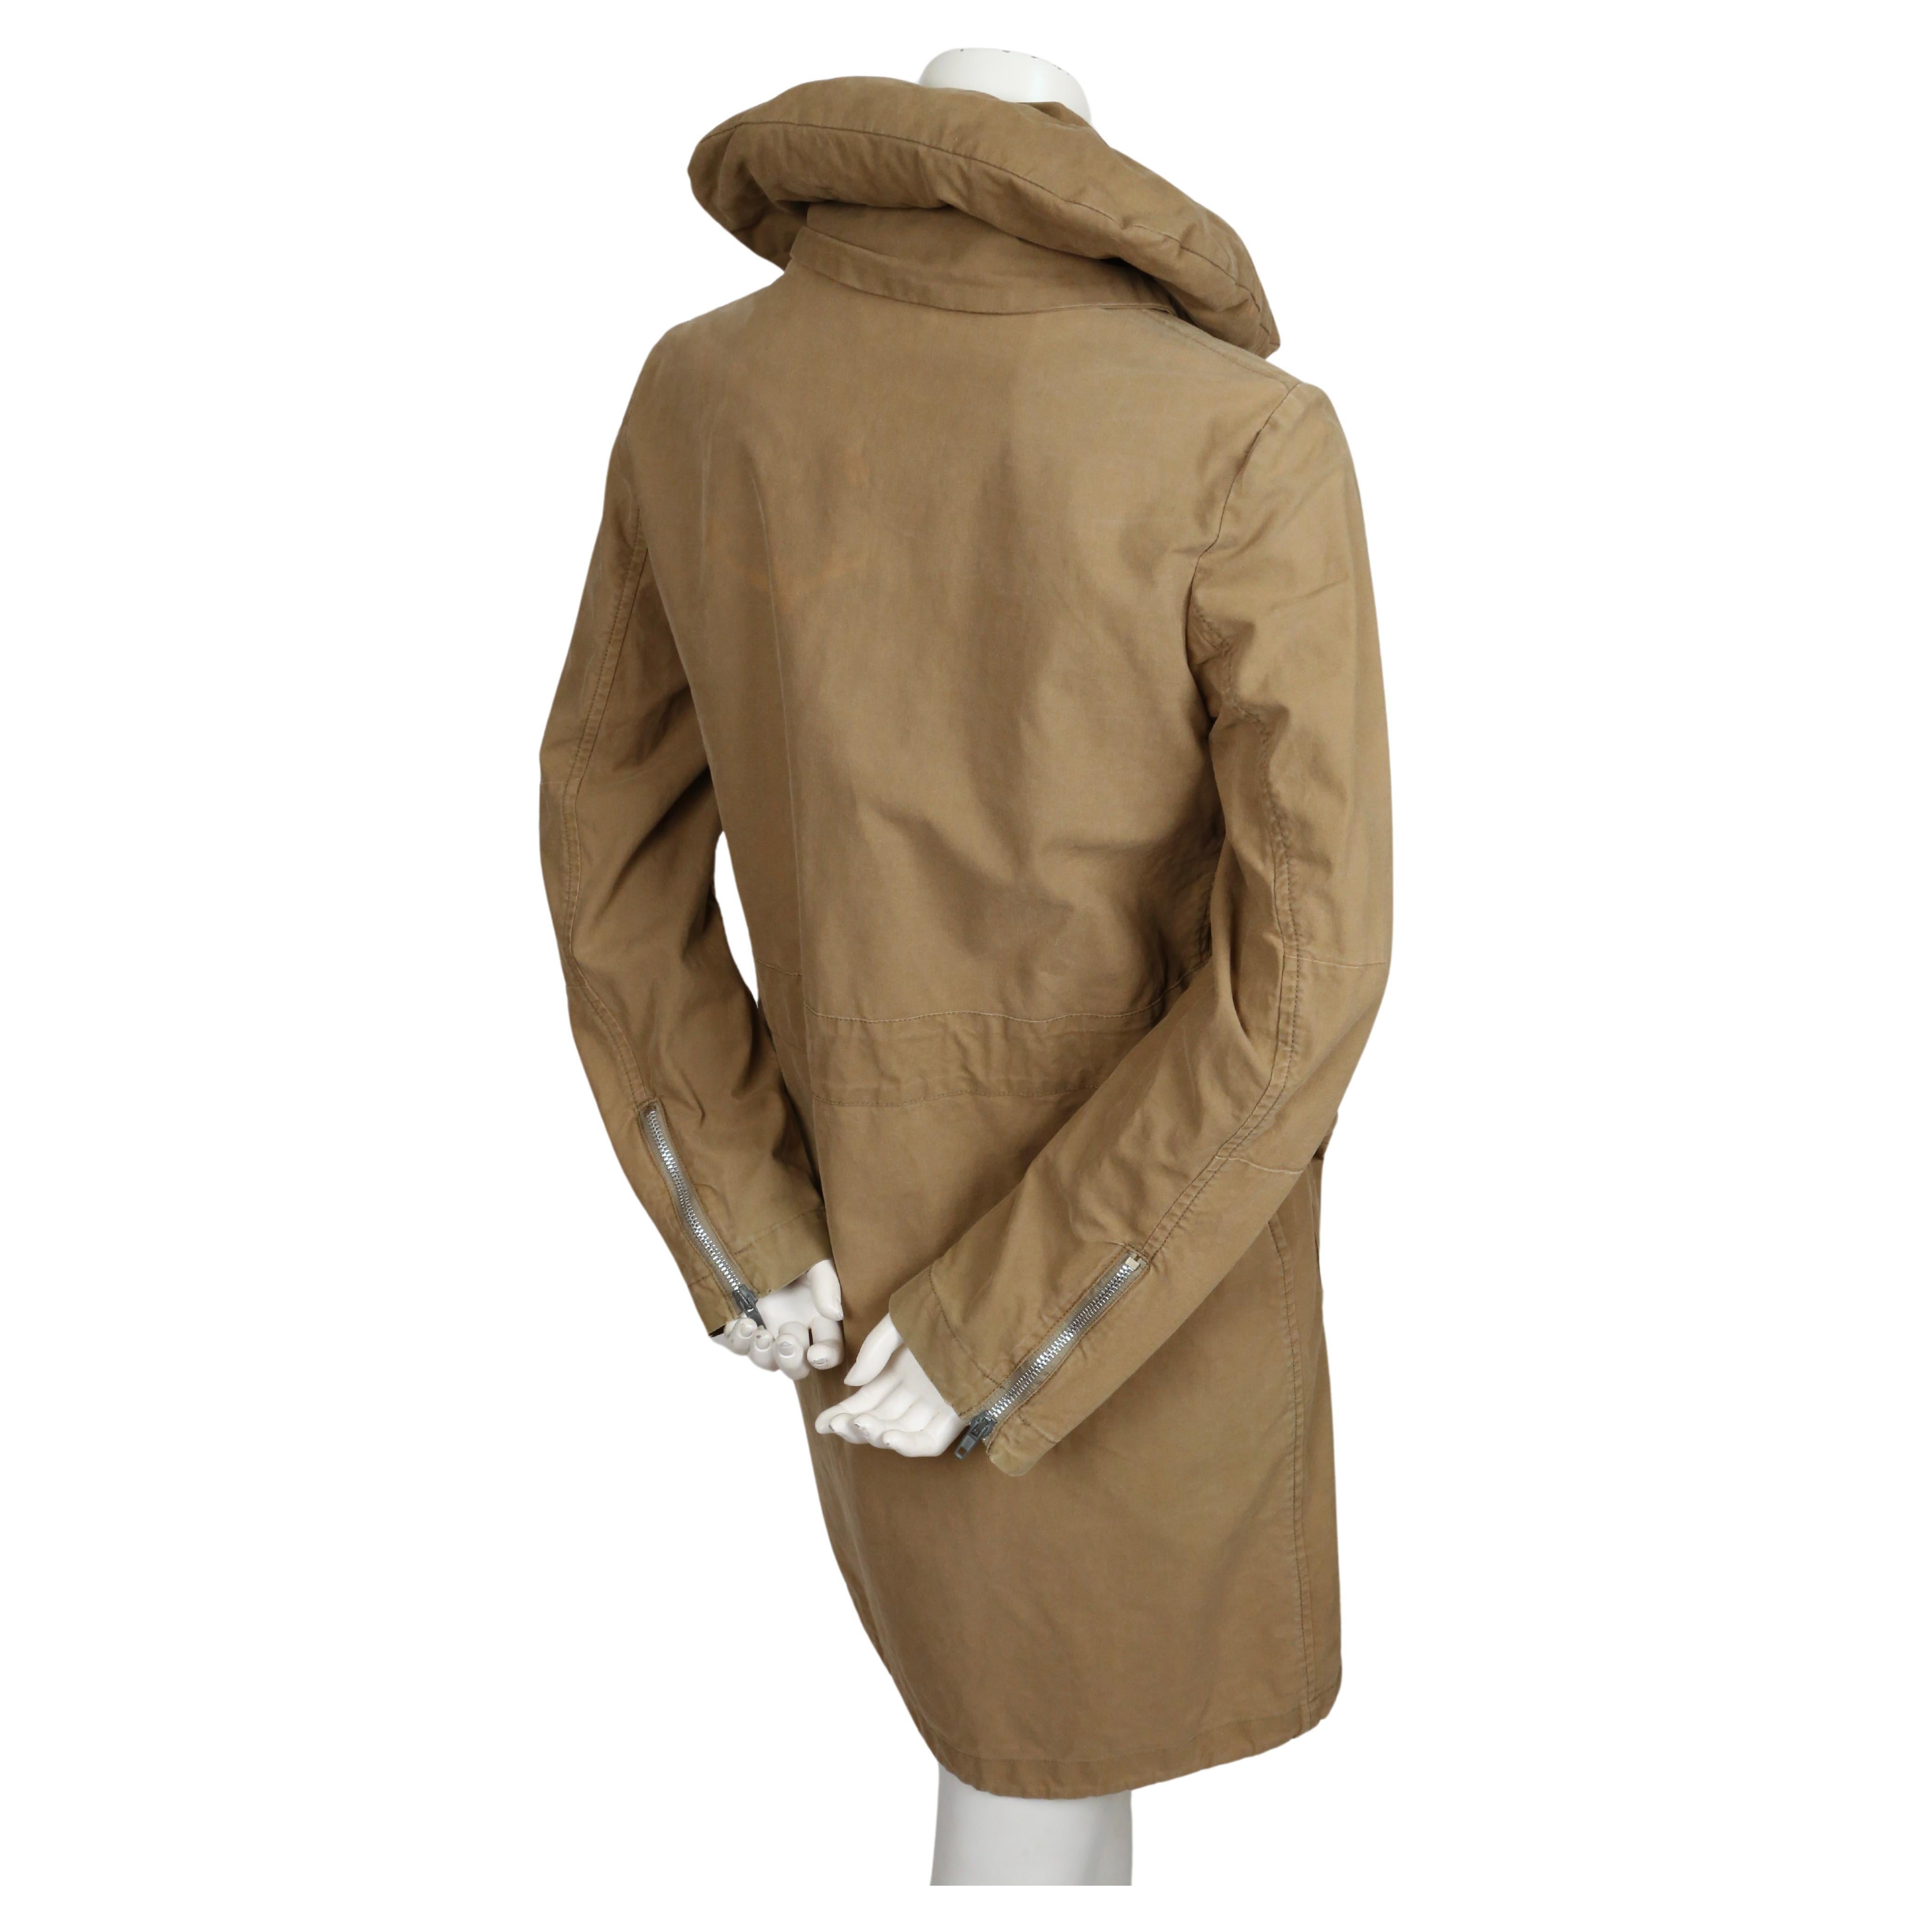 1999 HELMUT LANG vintage parka coat with padded collar & bondage straps  For Sale 3